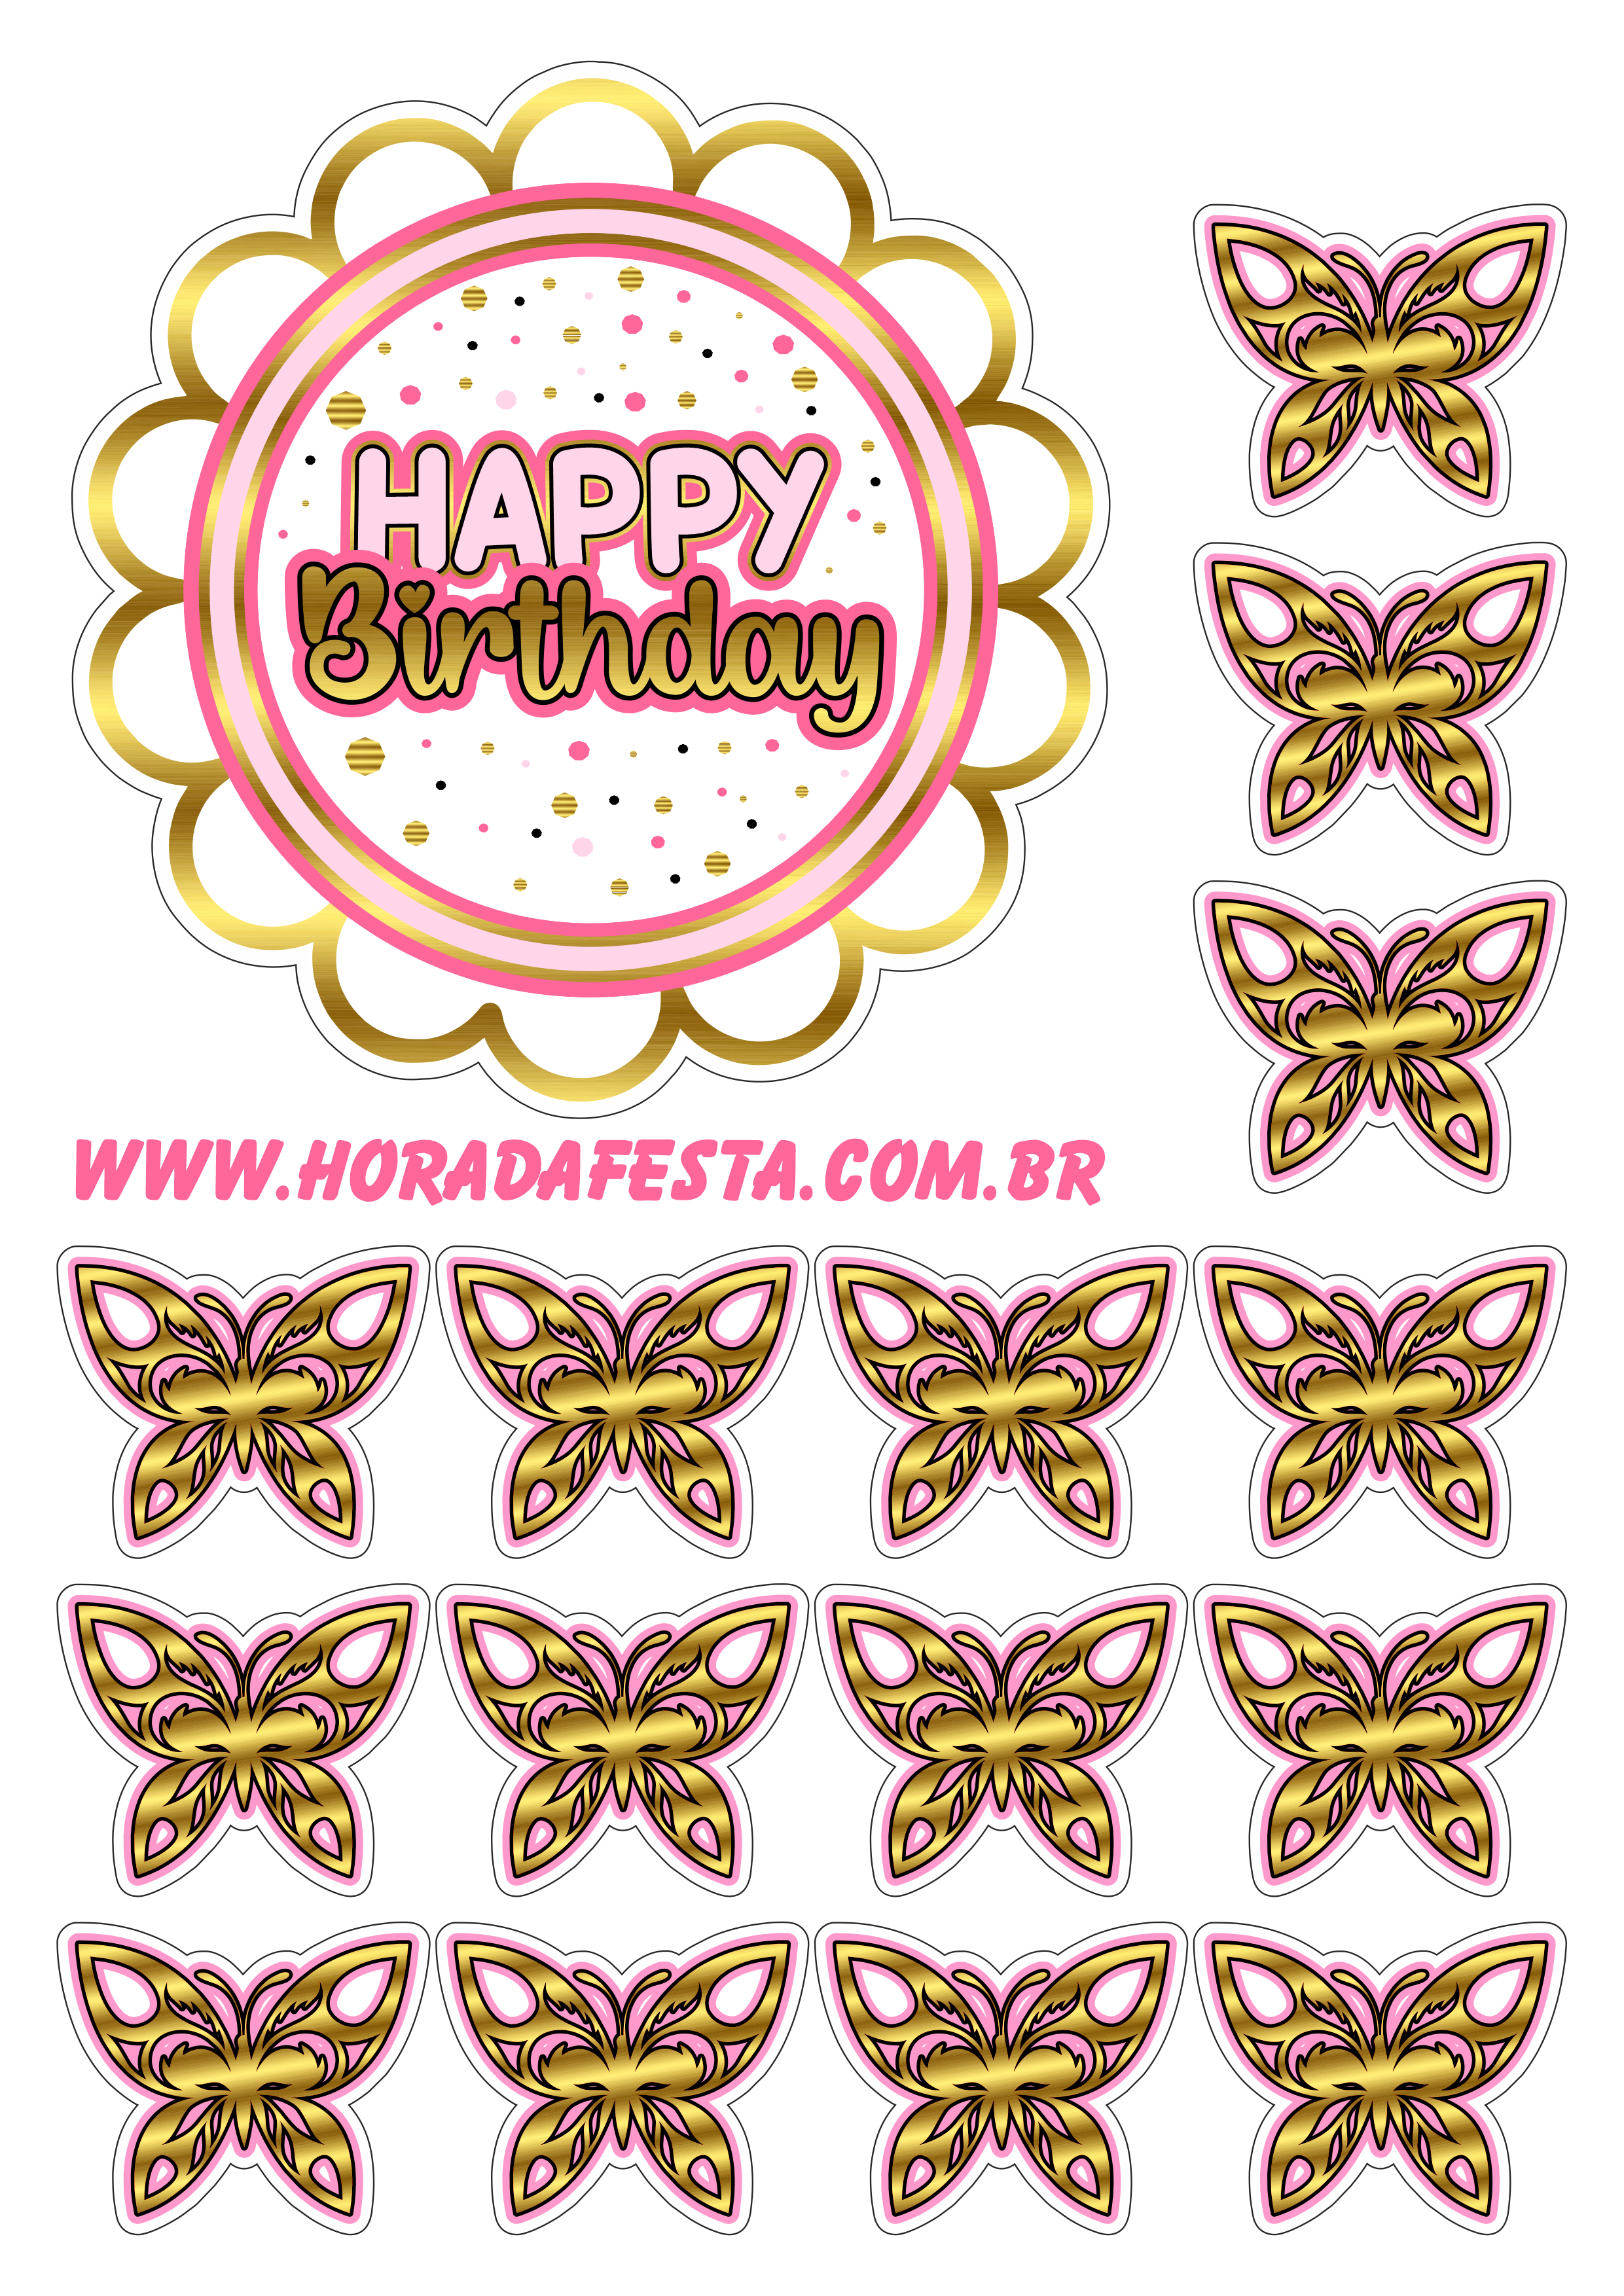 Happy birthday topo de bolo de aniversário dourado com rosa borboletas renda extra com festas e personalizados png